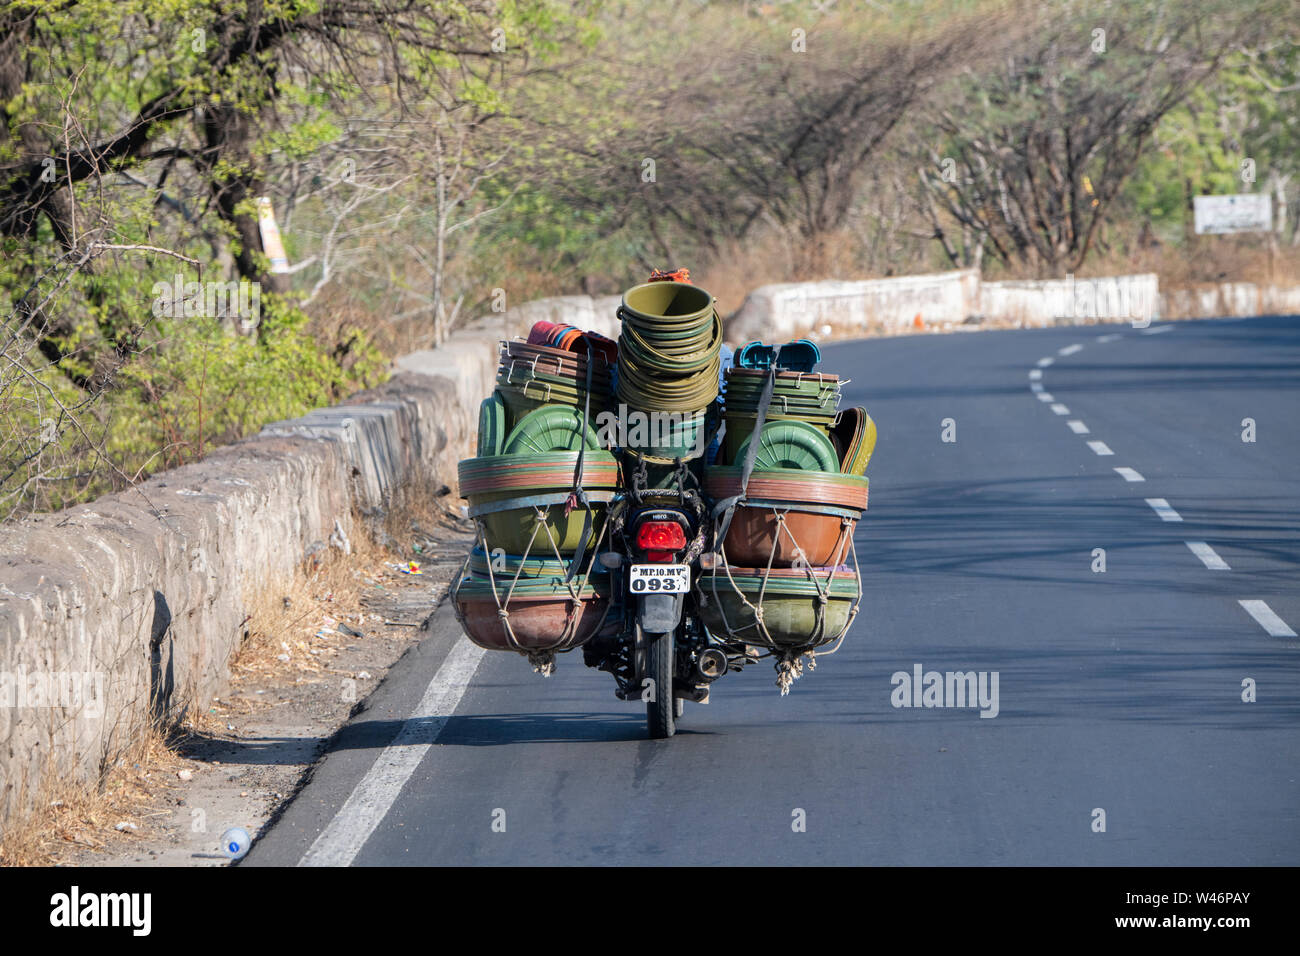 Indien, Bundesstaat Maharashtra, Aurangabad. Typische Straße Blick auf Motorrad mit einer vollen Ladung von Kunststoffbehältern. Stockfoto